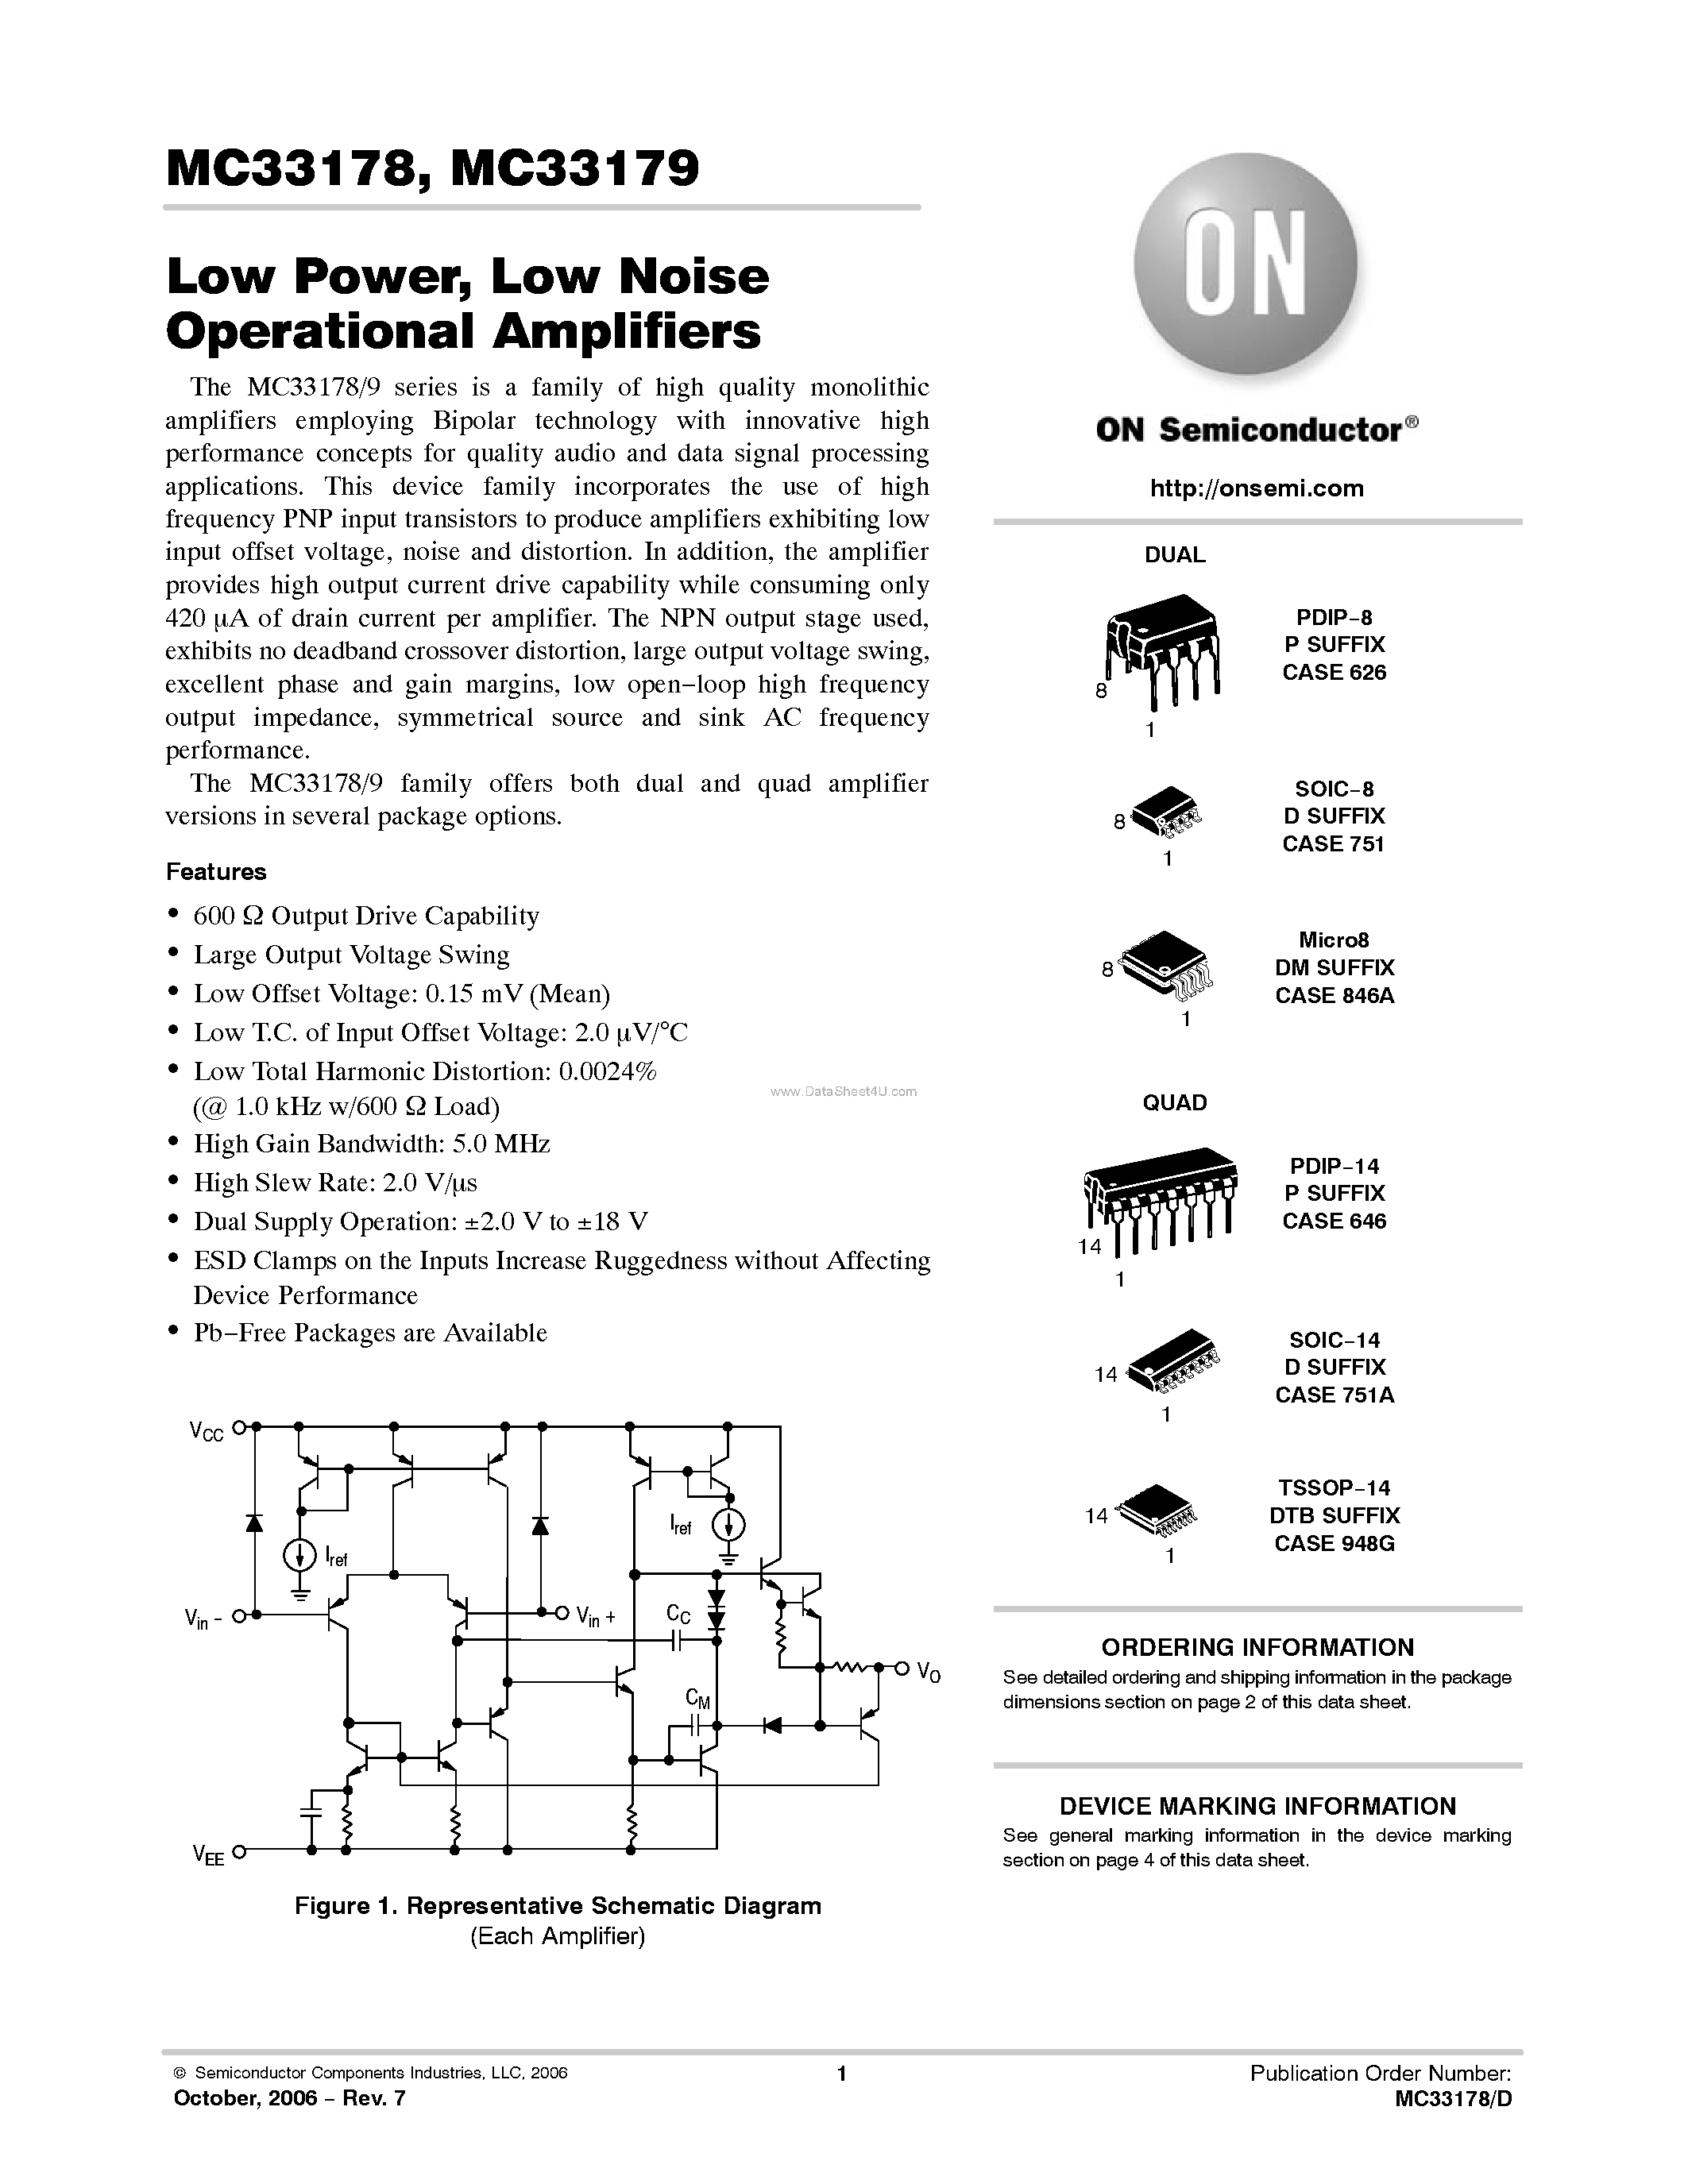 Datasheet MC33178 - (MC33178 / MC33179) Low Noise Operational Amplifiers page 1